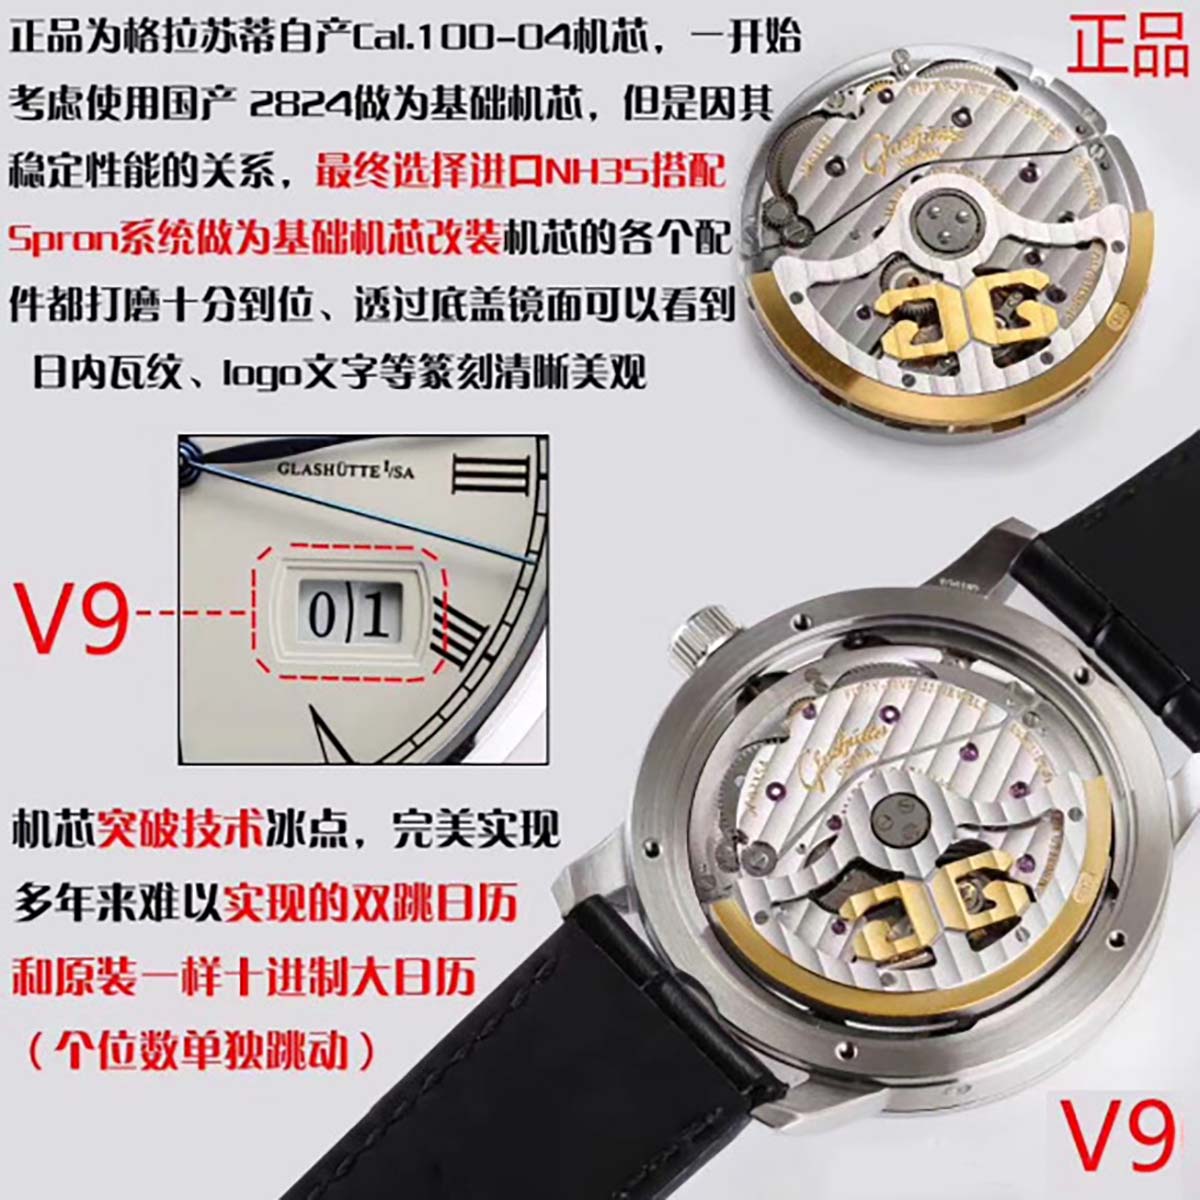 V9厂格拉苏蒂原创议员大日历月相复刻腕表对比正品图文评测